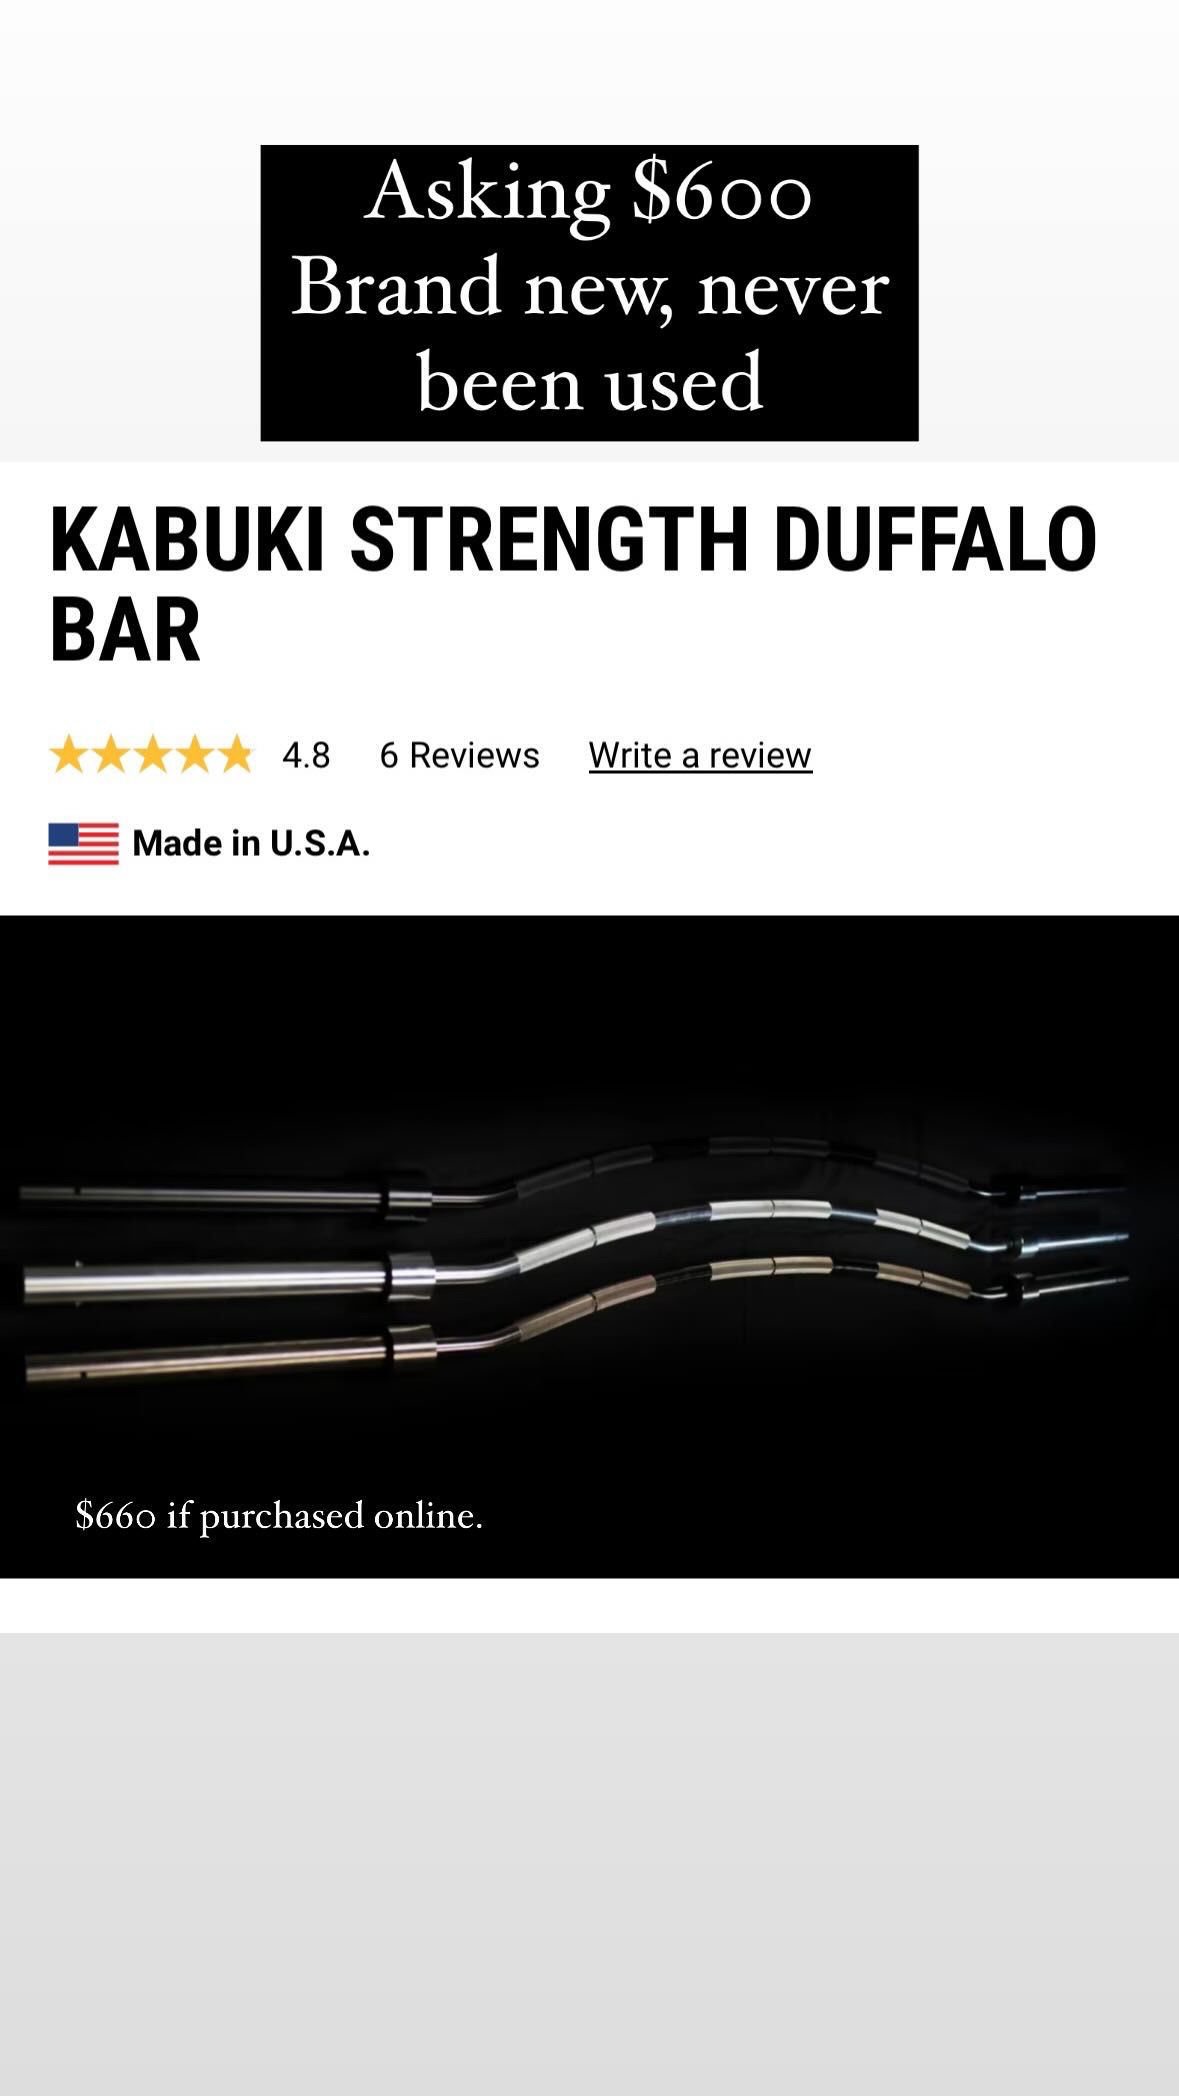 Kabuki Strength Duffalo Bar